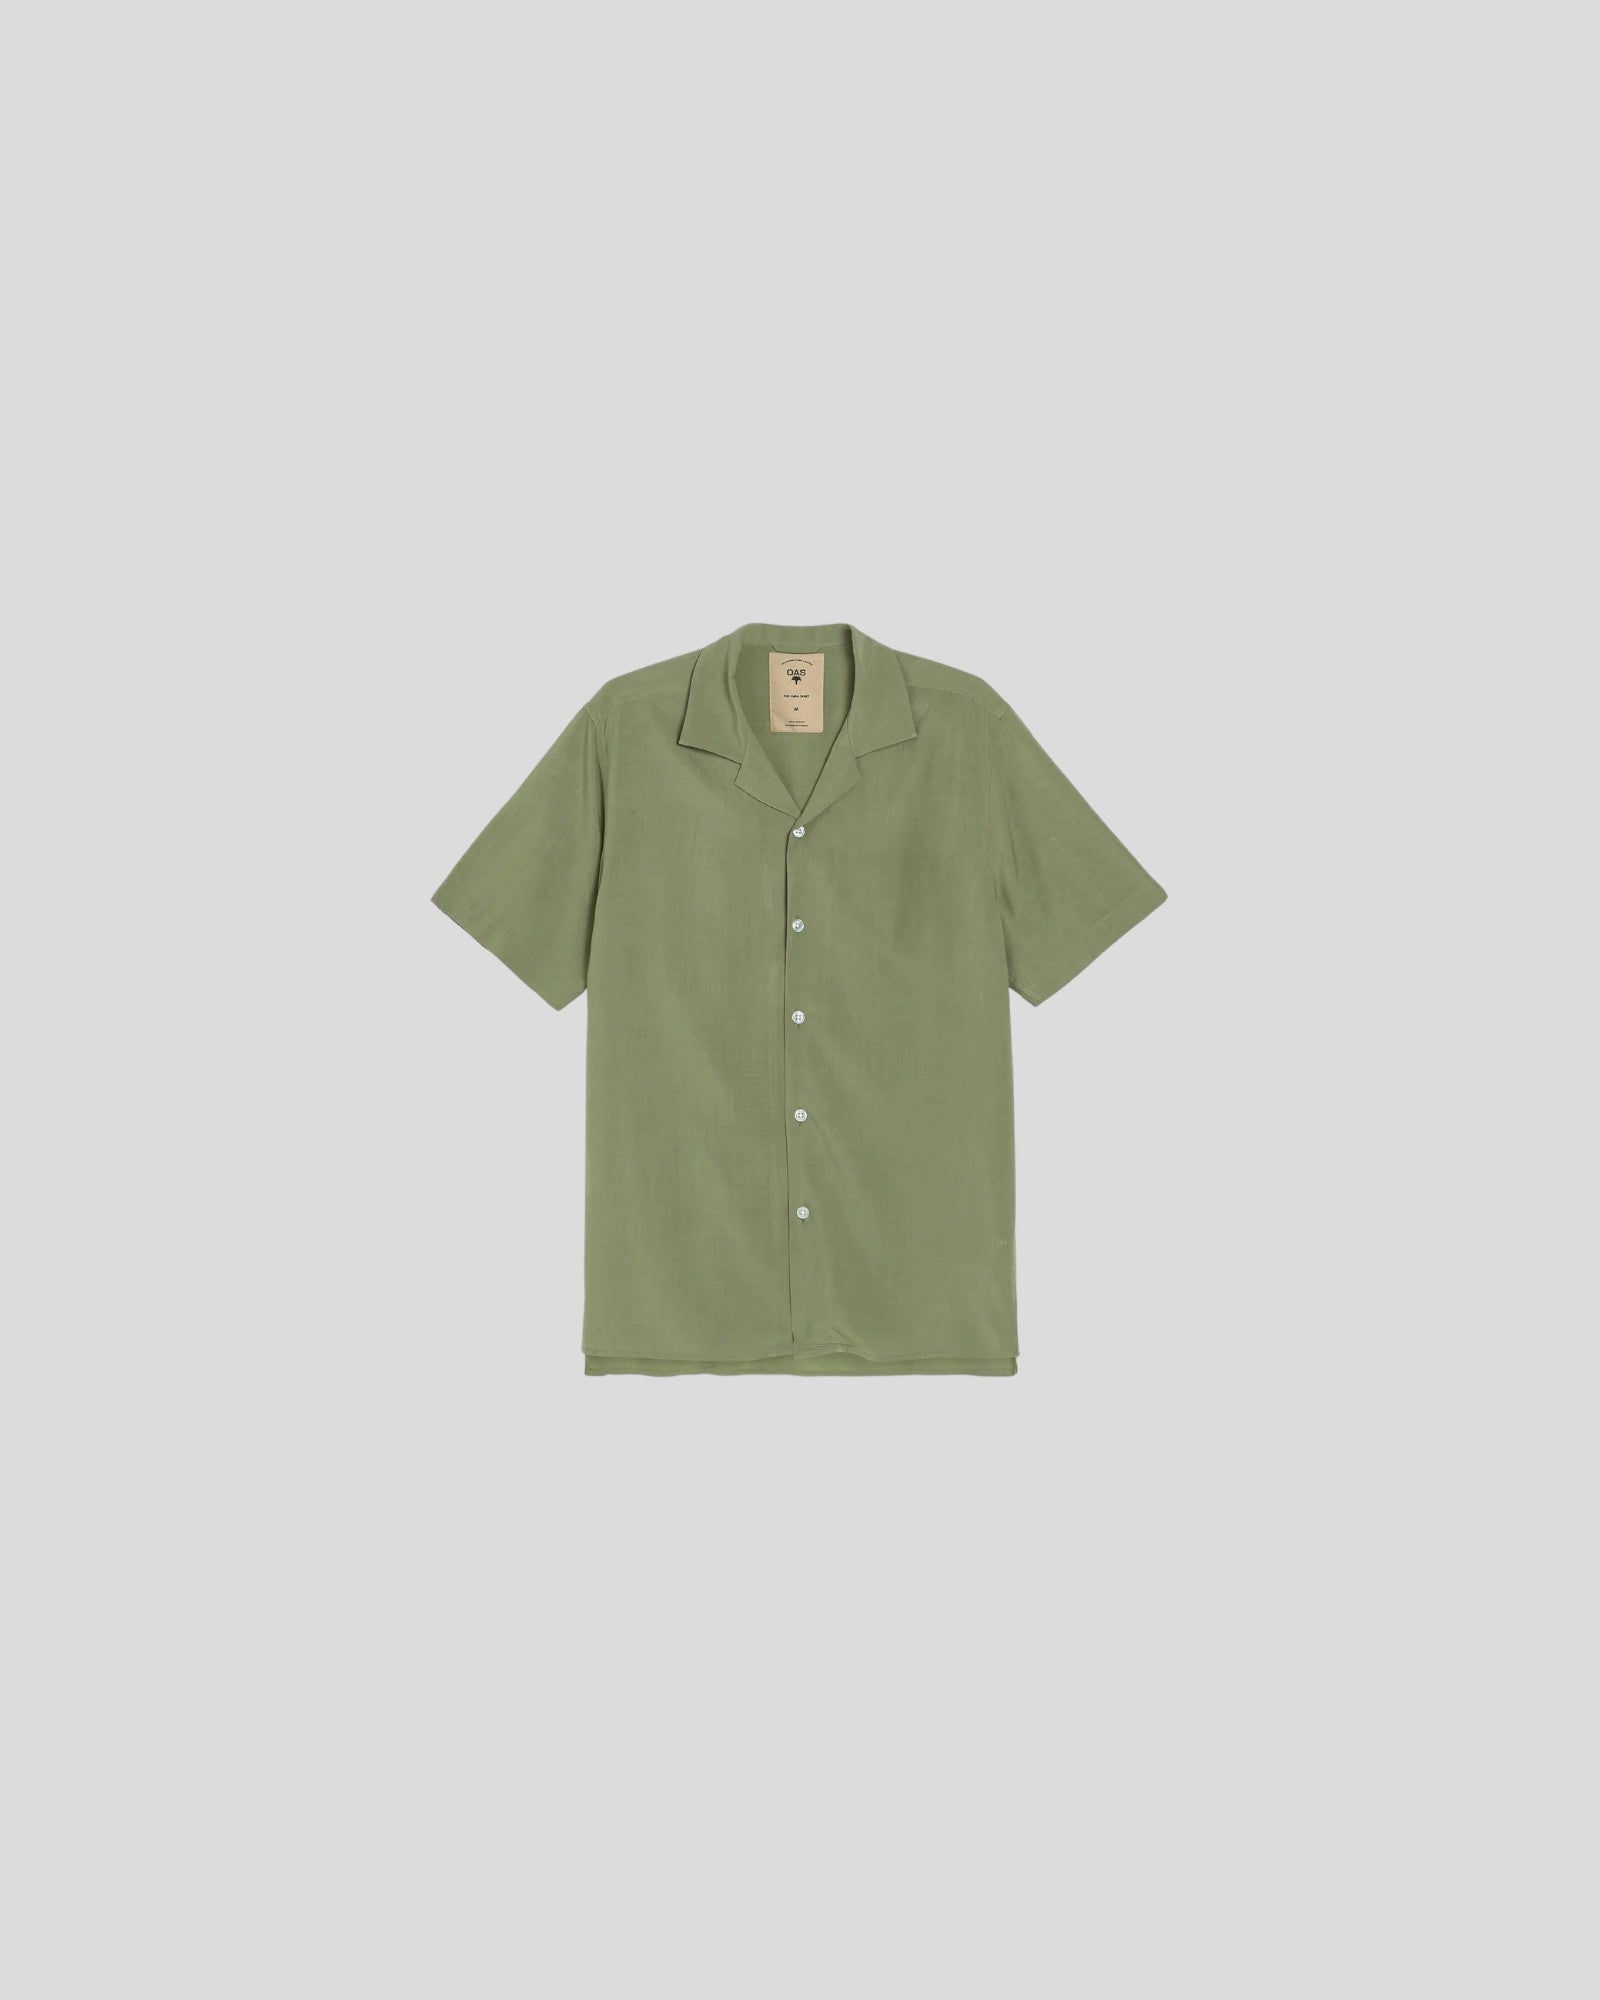 OAS || Viscose Shirt - Green Plain